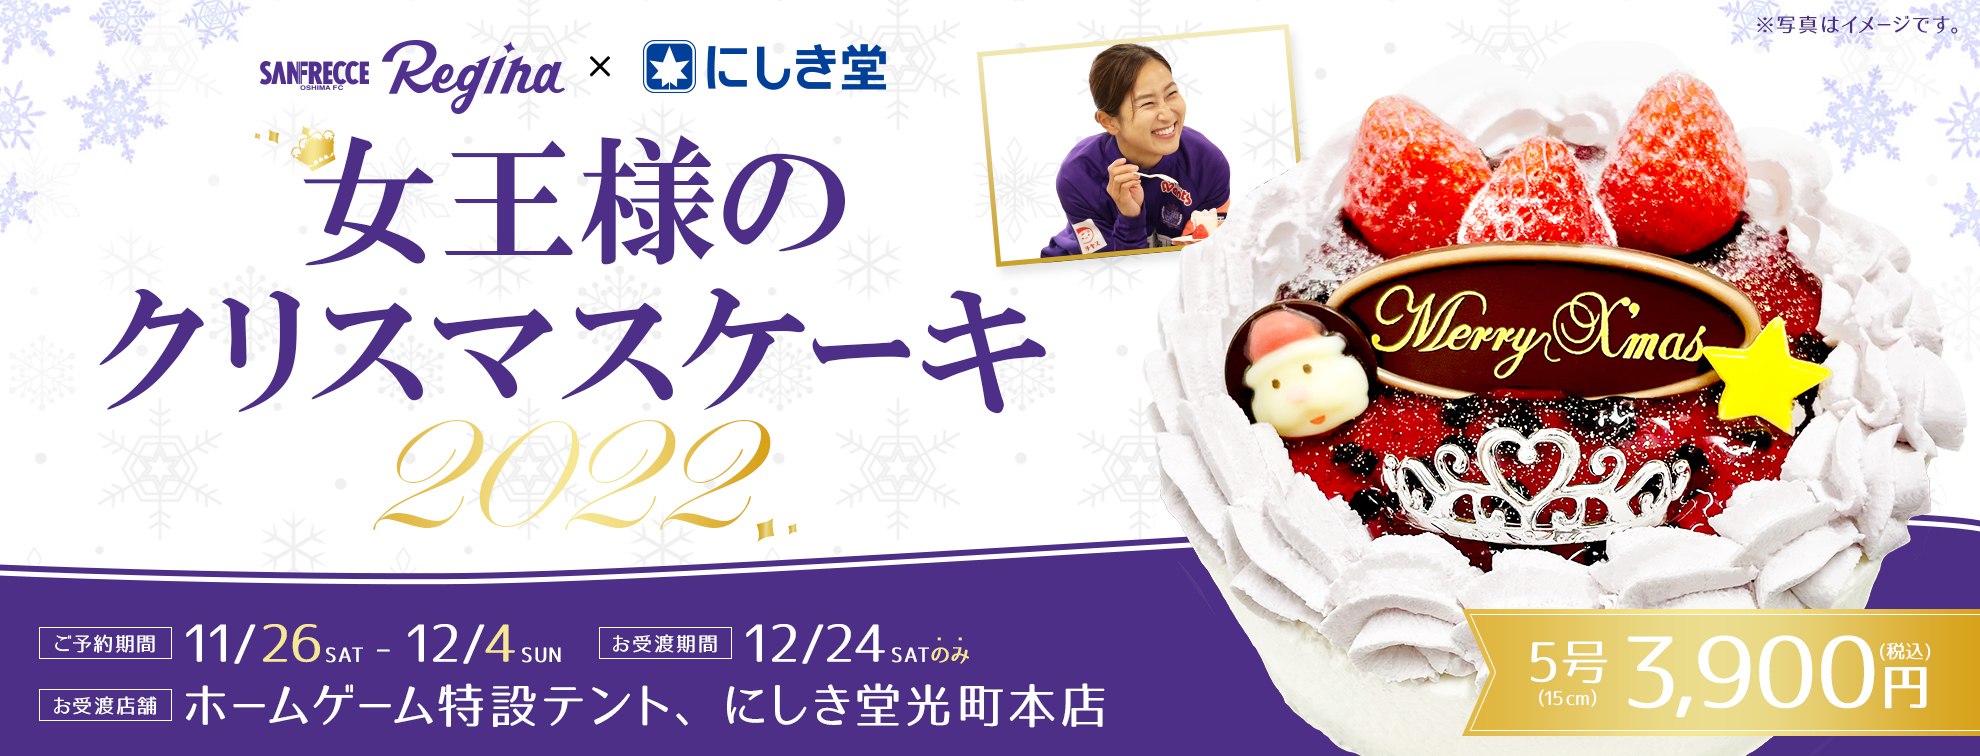 にしき堂×サンフレッチェ広島レジーナコラボクリスマスケーキ